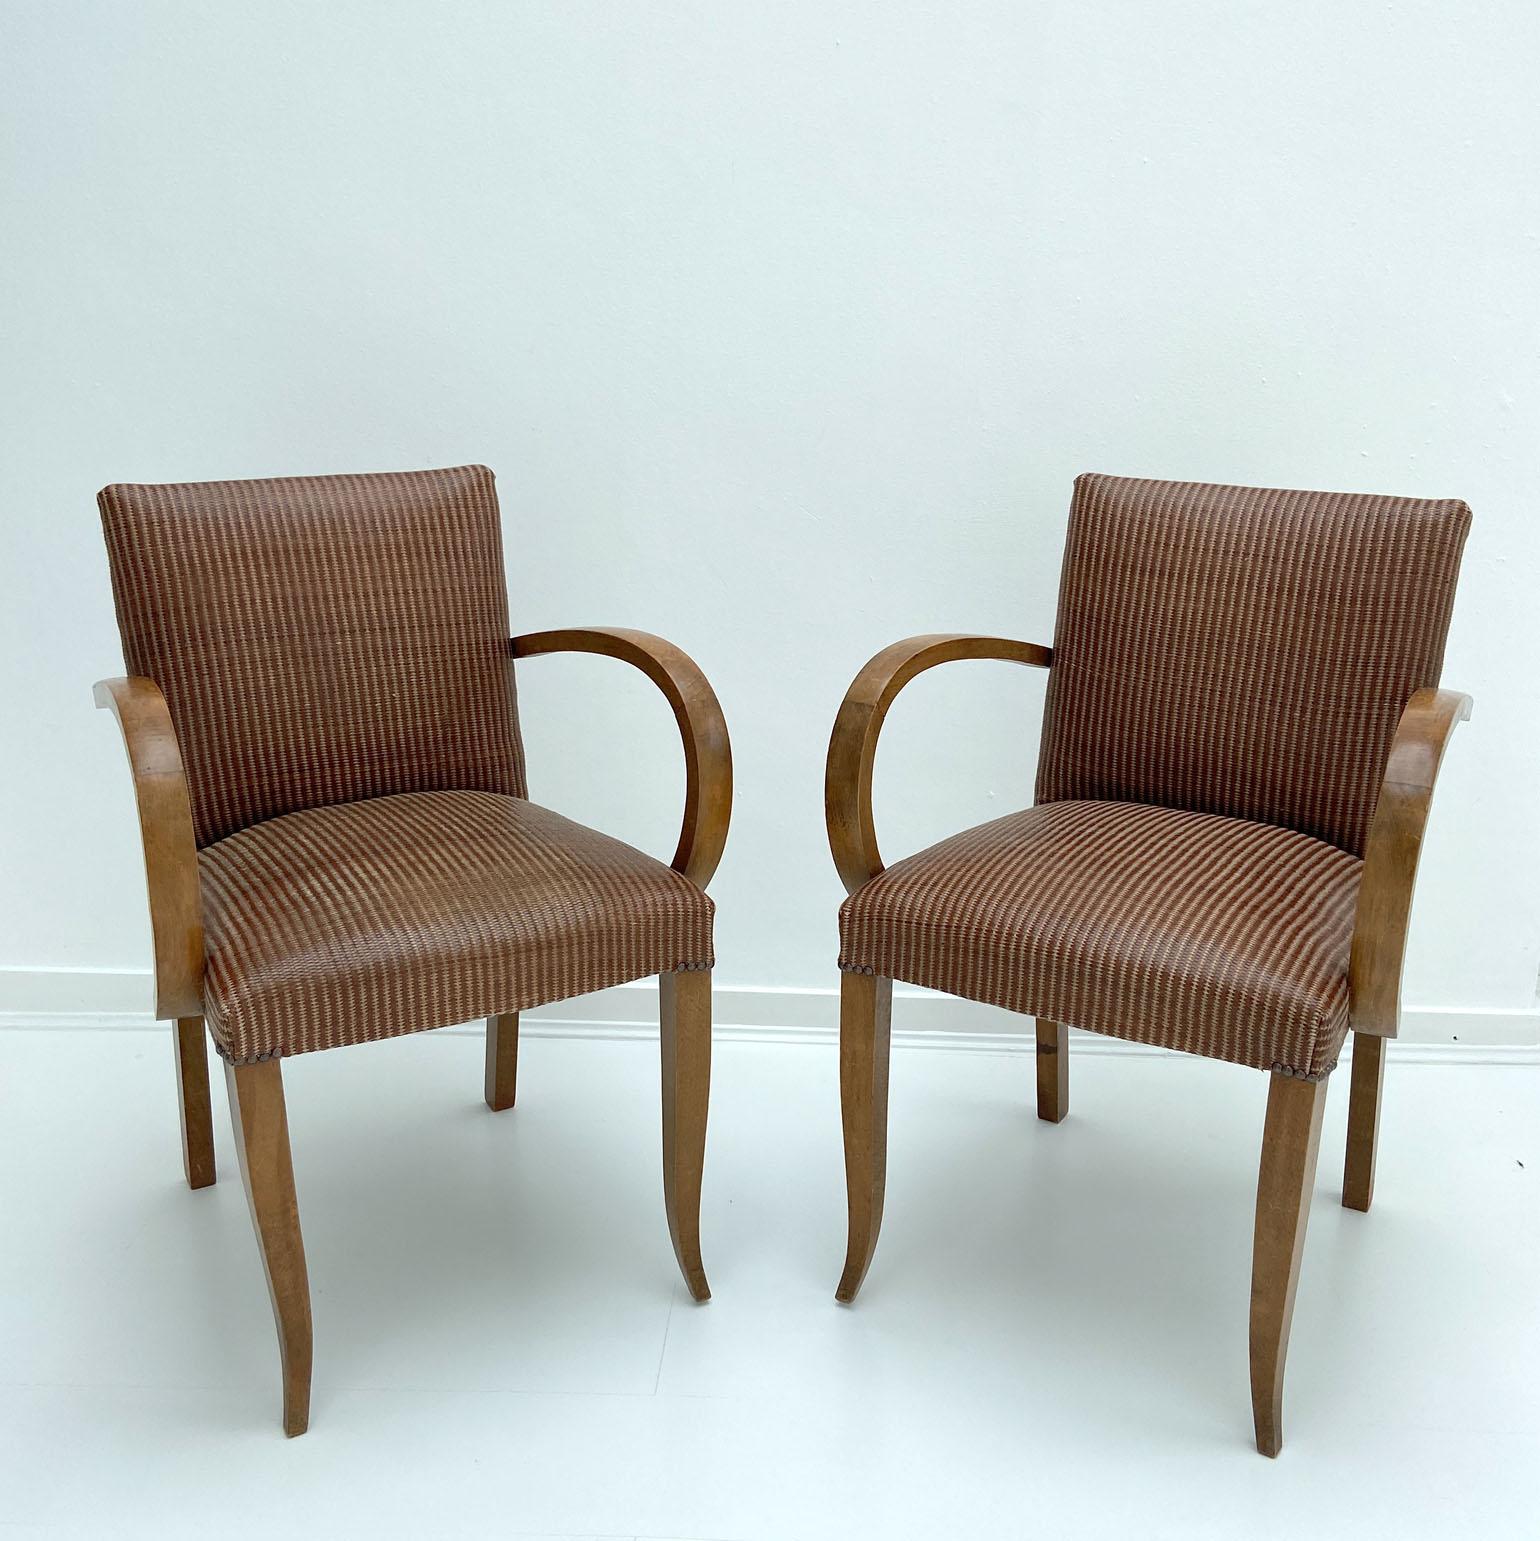 Paire de fauteuils ou de chaises à pont français Art Déco des années 1930. Les chaises modernistes présentent des lignes épurées et d'élégants pieds avant incurvés en chêne. Les bras sont en bois courbé. Ils ont été retapissés en cuir brun tabac du